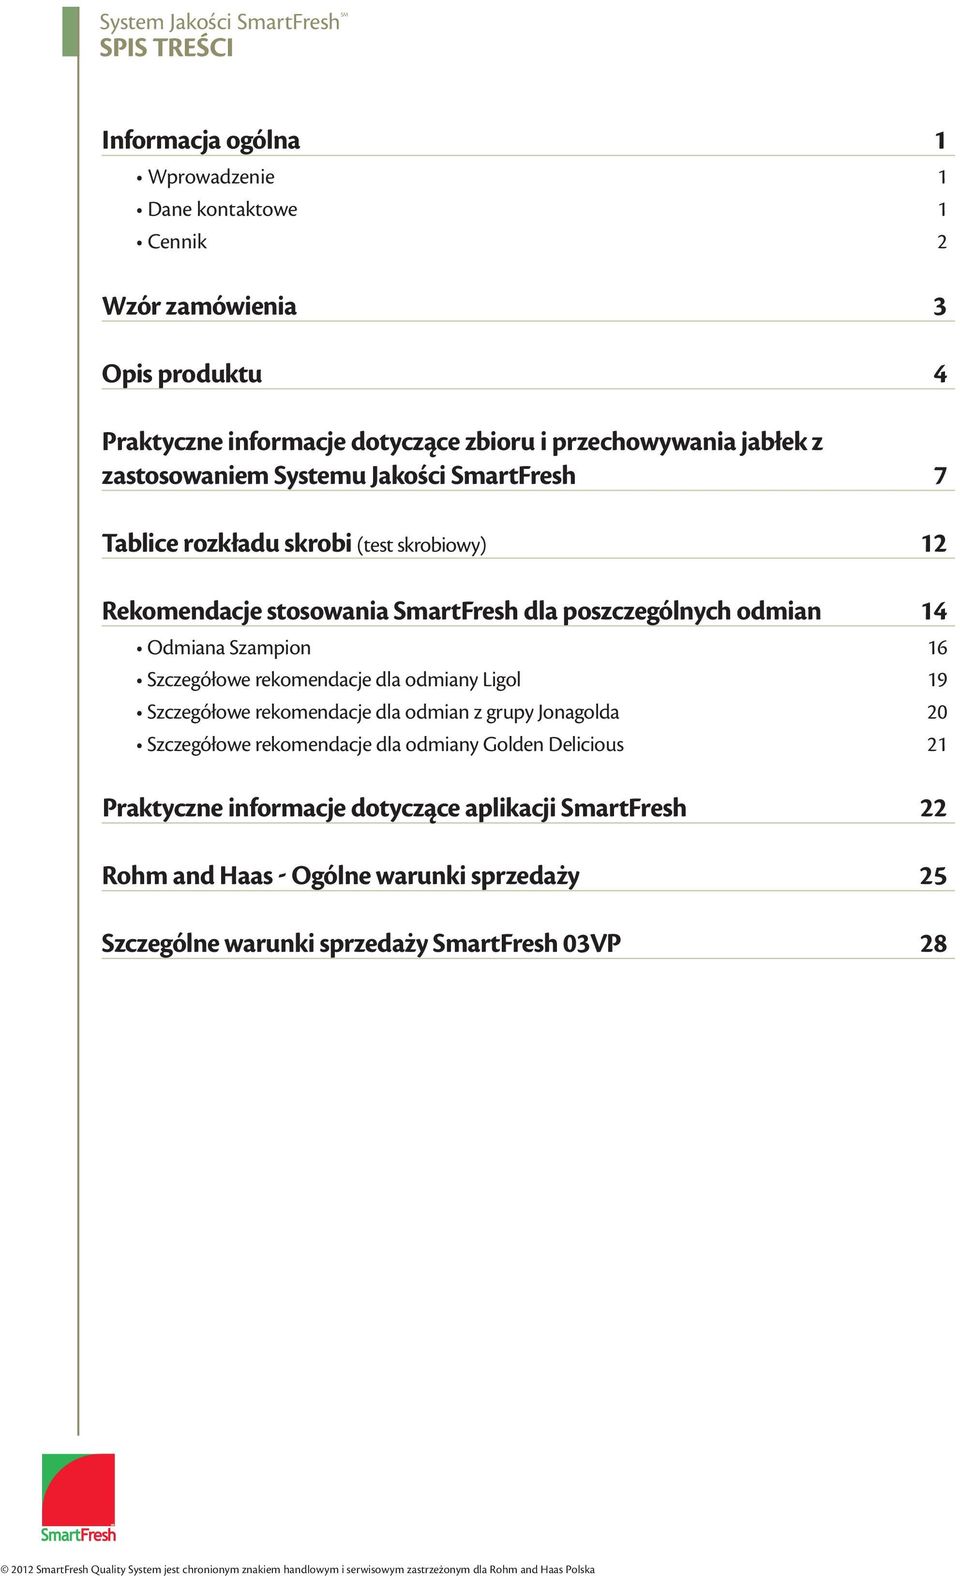 odmiany Ligol 19 Szczegółowe rekomendacje dla odmian z grupy Jonagolda 20 Szczegółowe rekomendacje dla odmiany Golden Delicious 21 Praktyczne informacje dotyczące aplikacji SmartFresh 22 Rohm